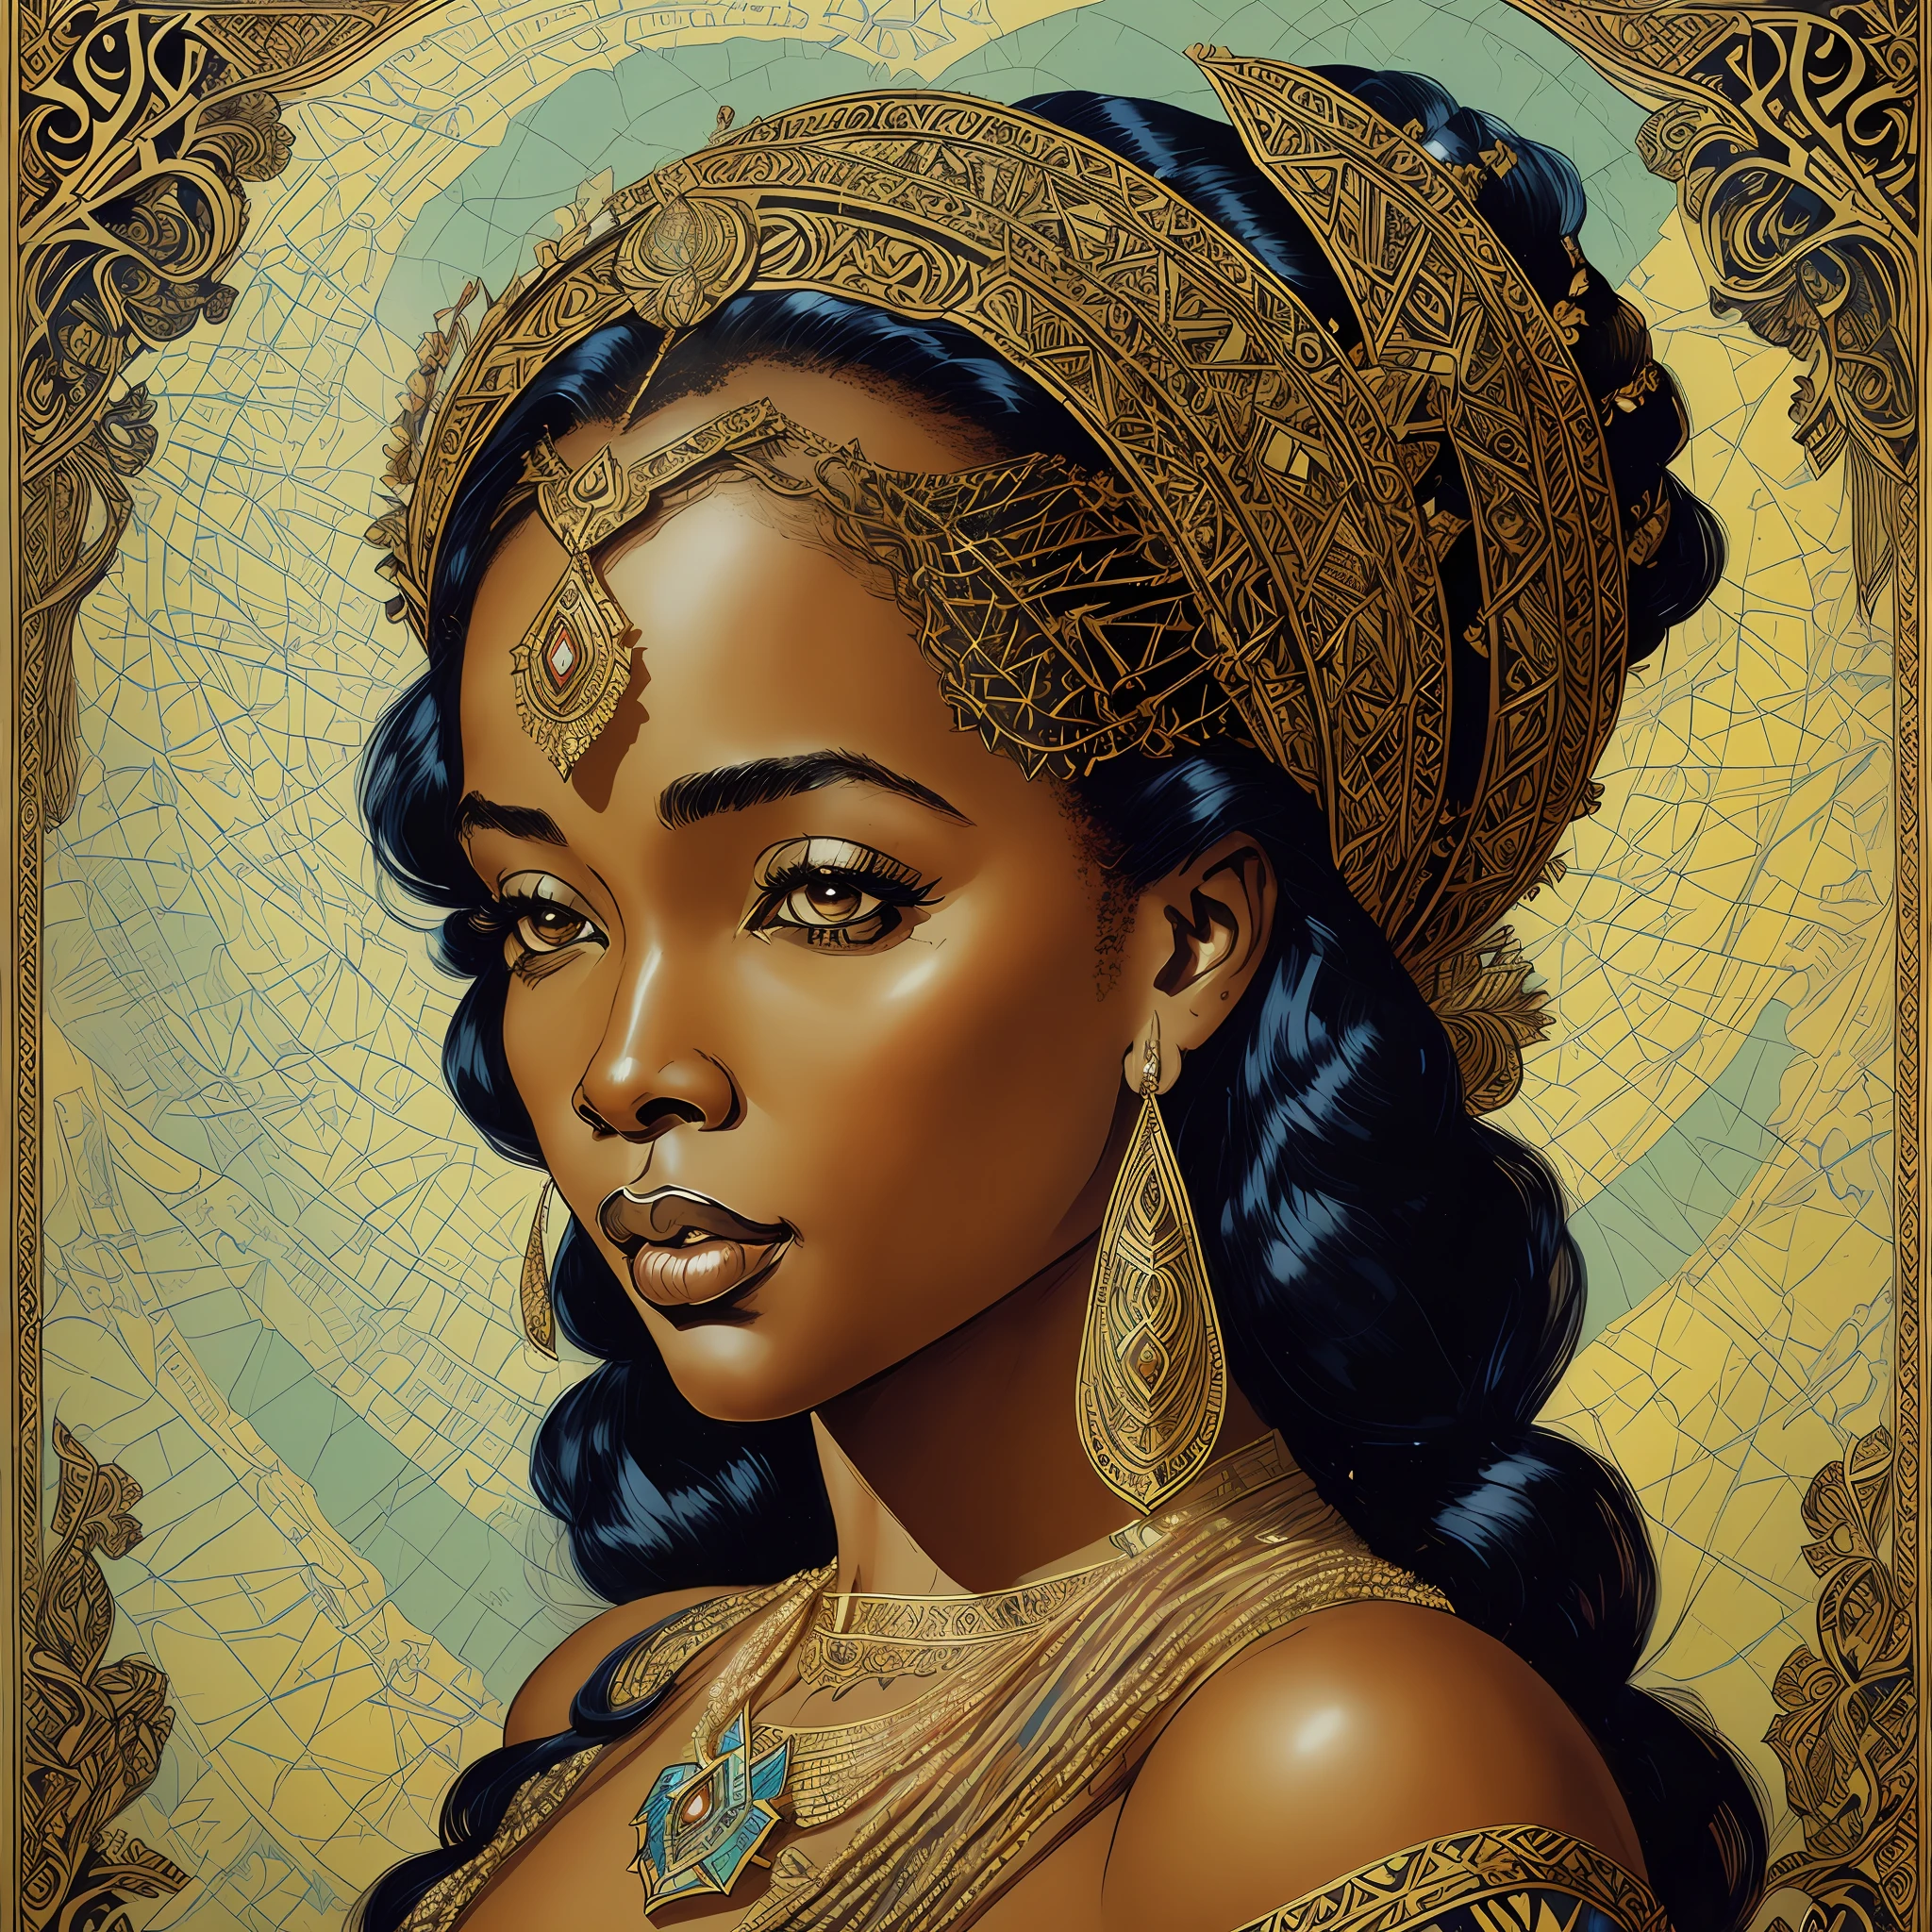 아름다운 젊은 아프리카 여왕, hea디 an디 shoul디ers portrait, 마일로 마나라, 2 0 0 0 빈티지 고딕 그림, 디 & 디, 공상, 뒤얽힌, 우아한, highly 디etaile디, 디igital painting, 아트스테이션, 컨셉 아트, 매끄러운, 날카로운 초점, --자동 --s2